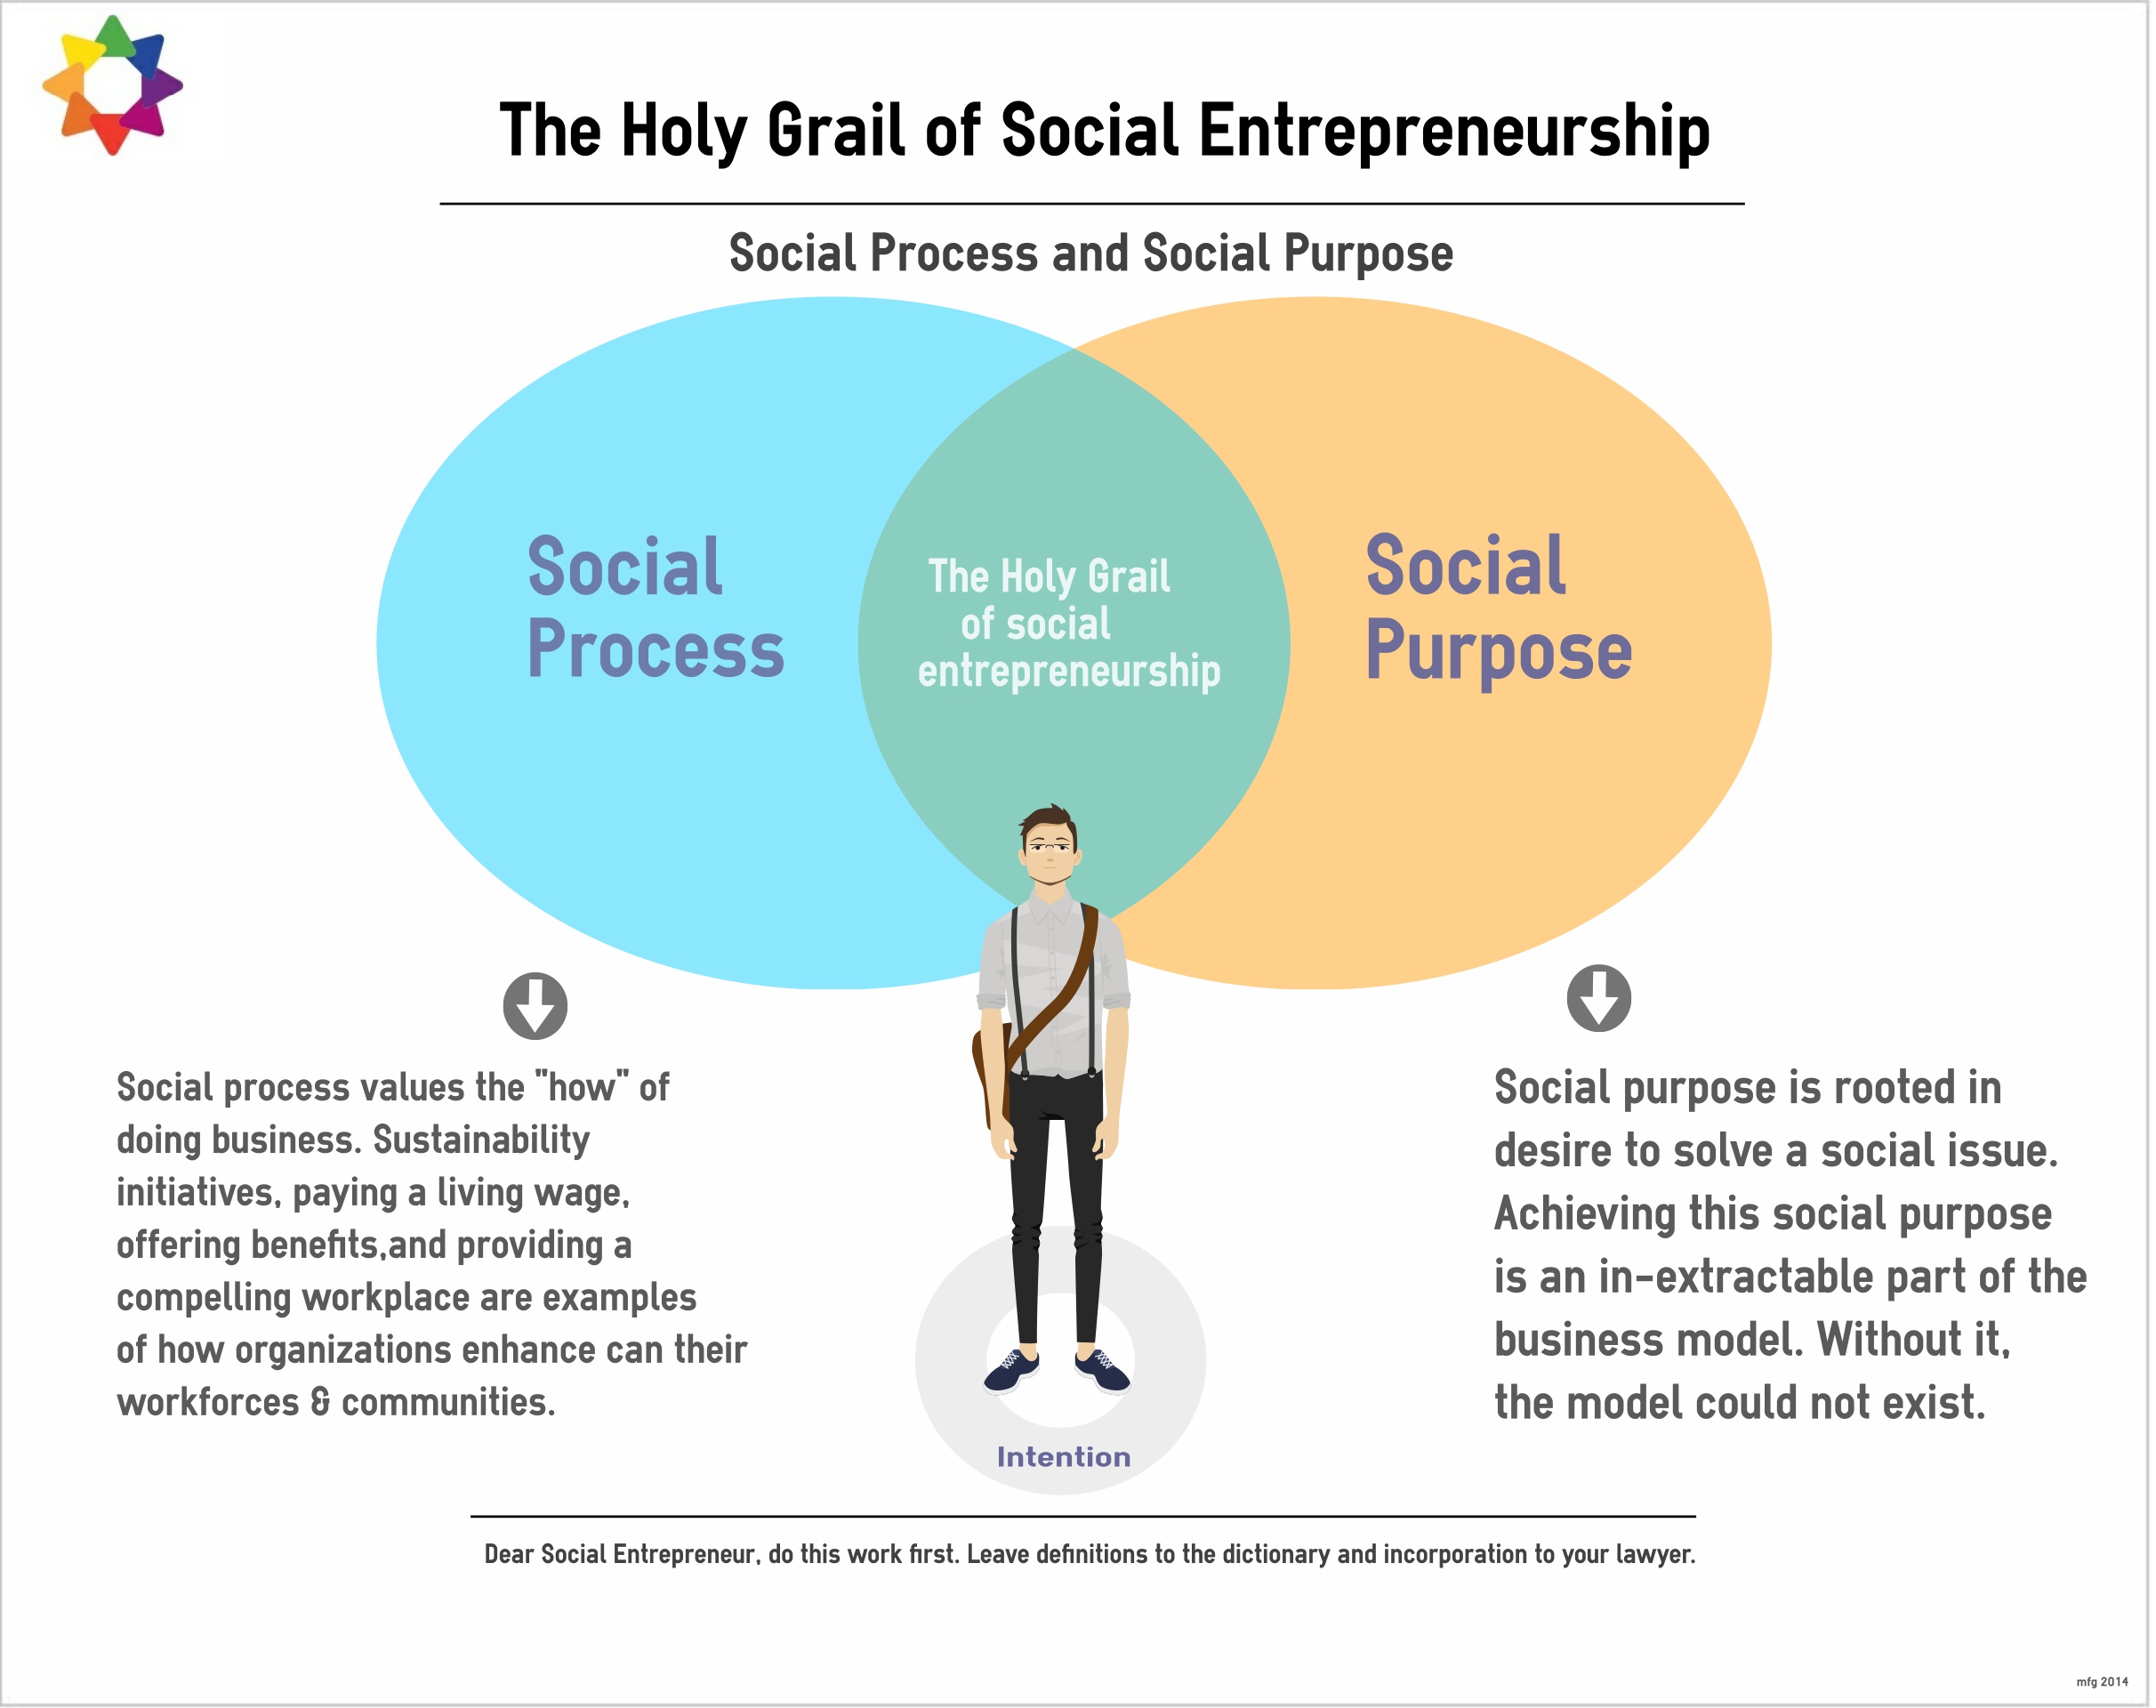 The Holy Grail of Social Entrepreneurship?